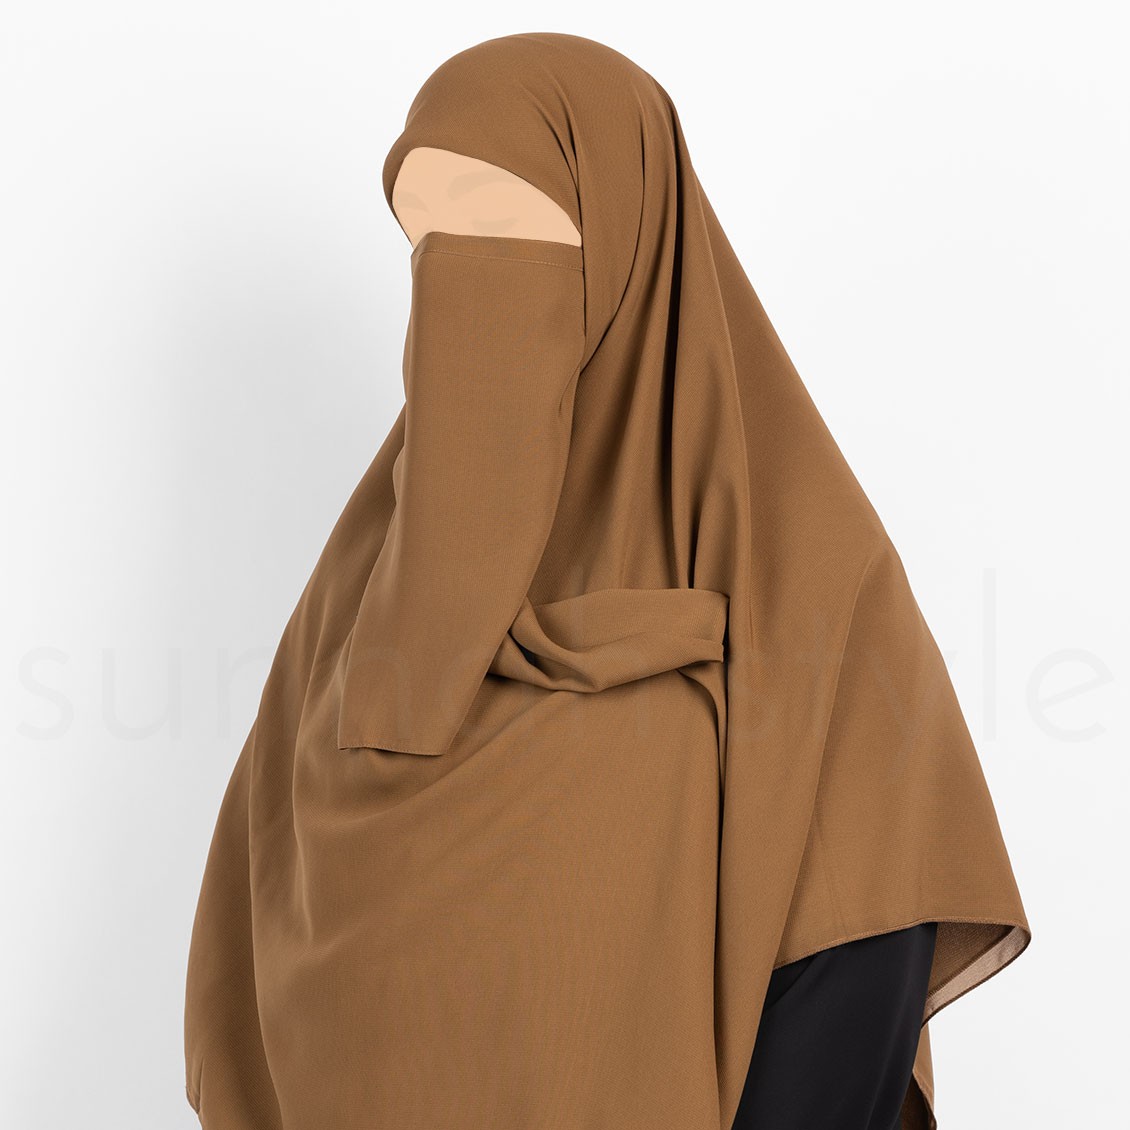 Sunnah Style Tying Half Niqab Caramel